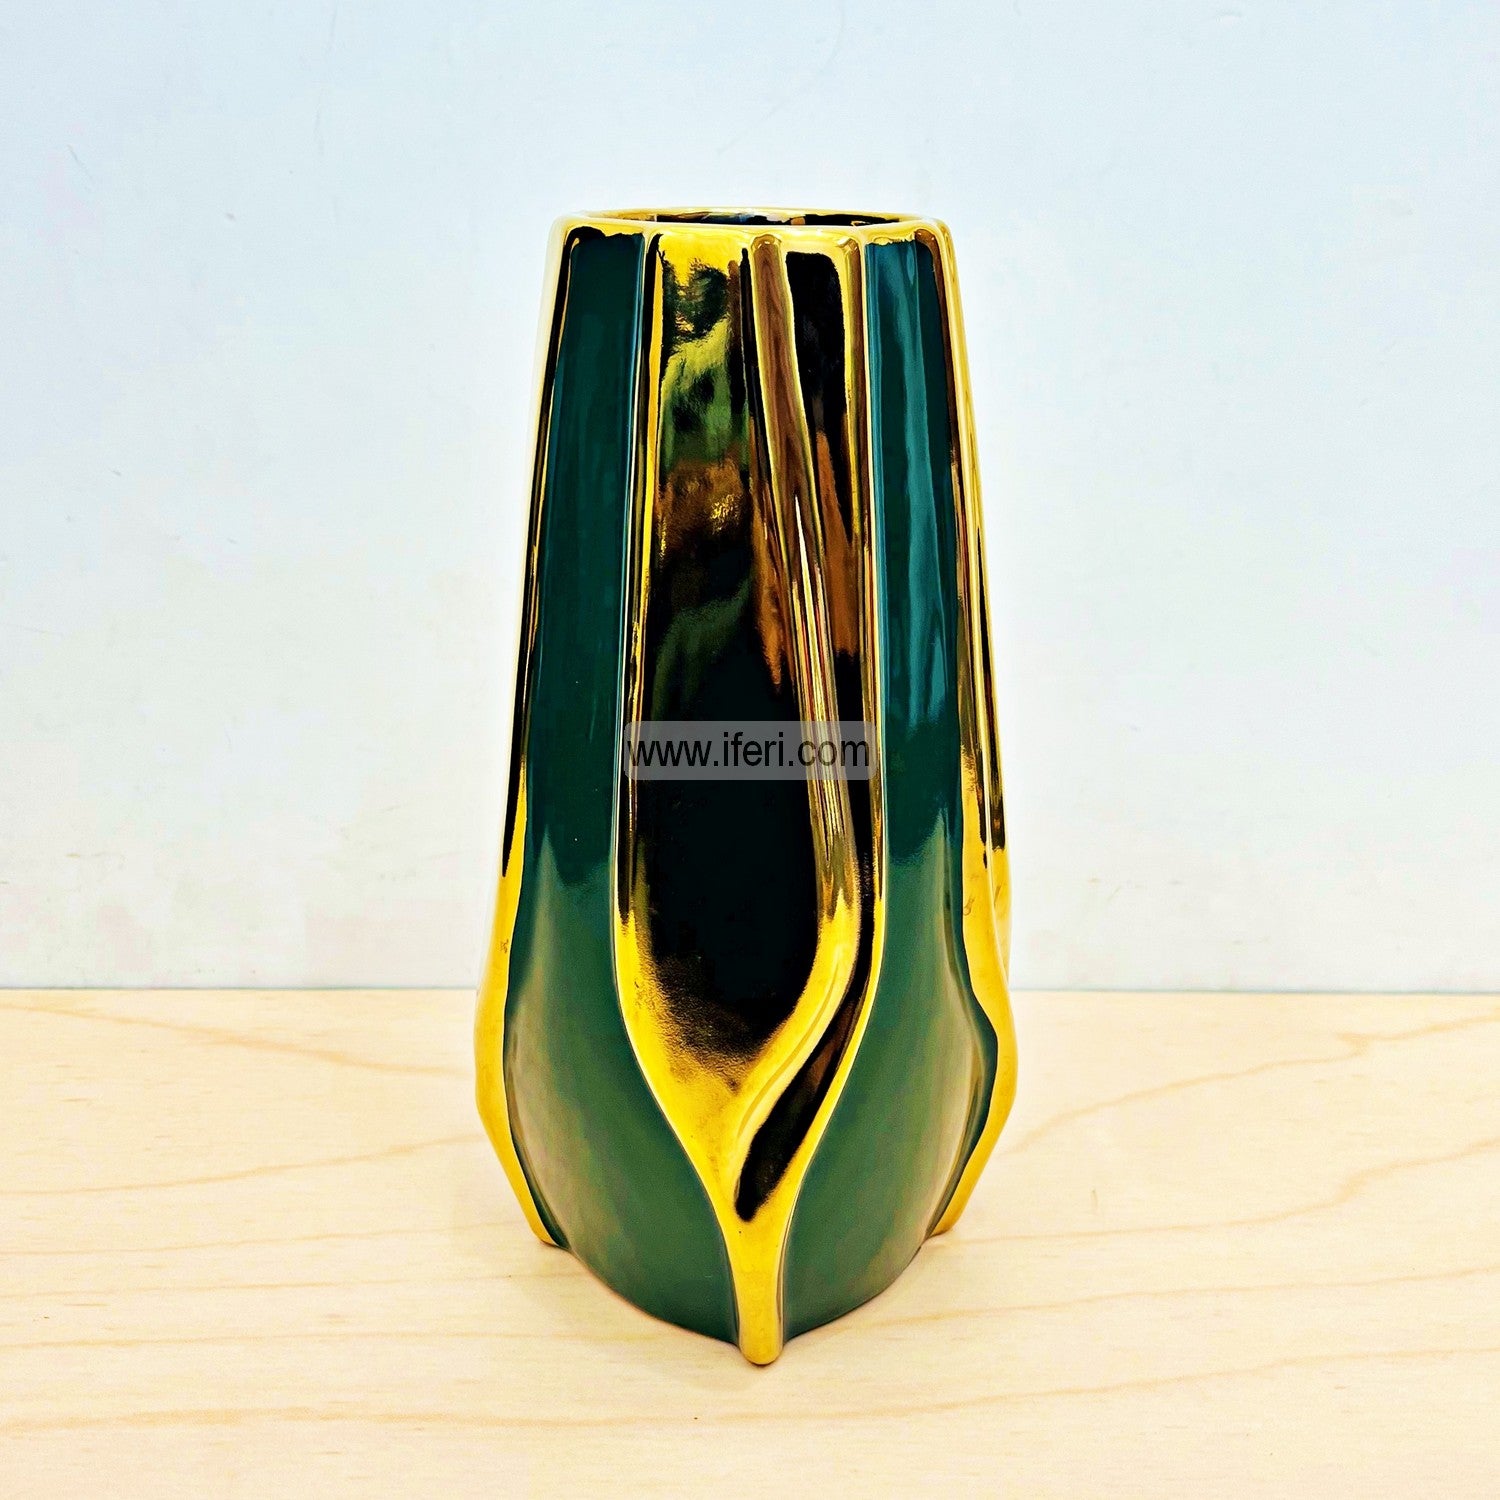 10 Inch Exclusive Ceramic Decorative Flower Vase FH2176